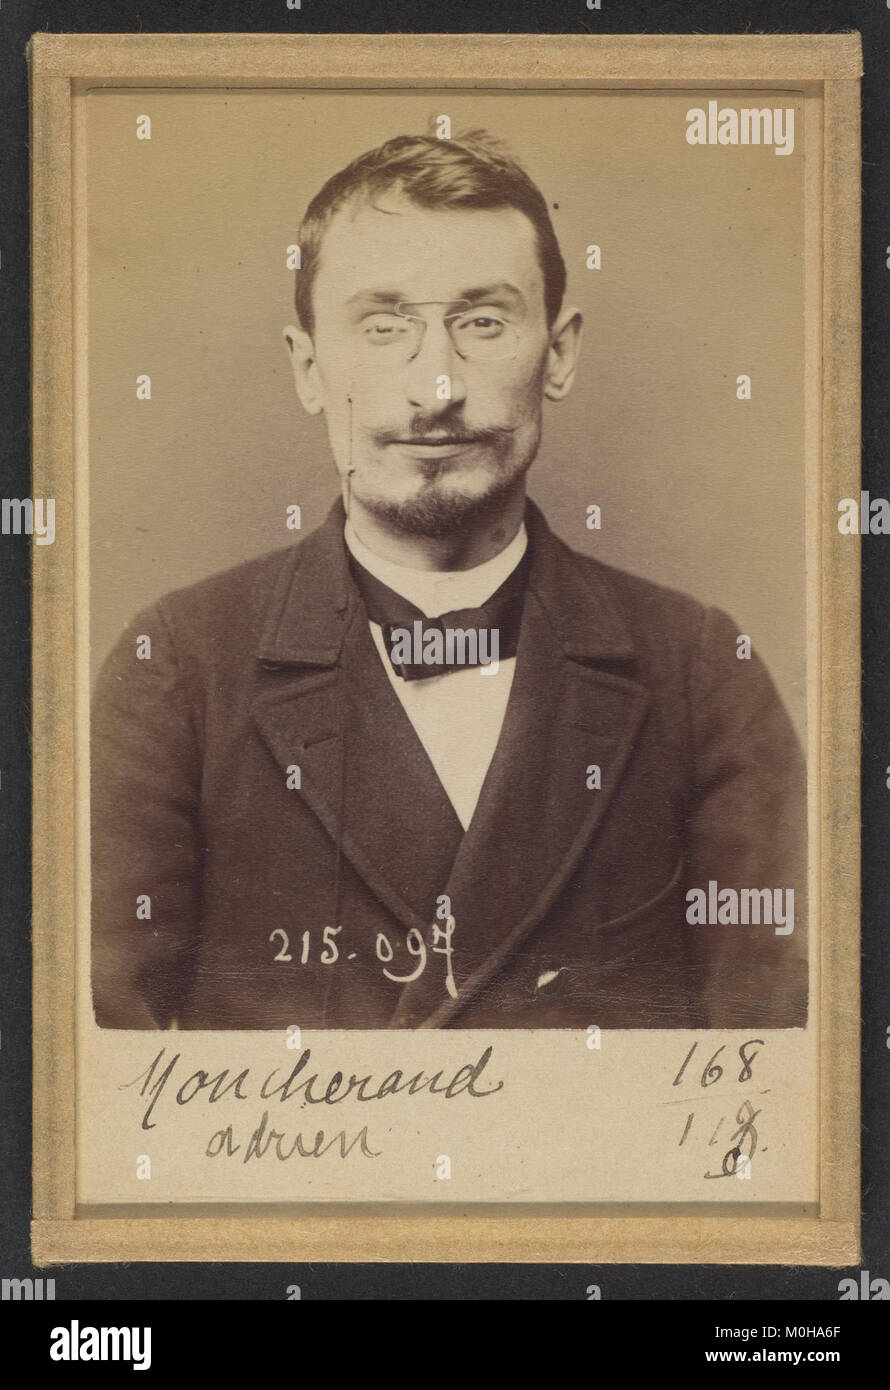 Moucheraud. Adrien, Eugène. 28 ans, né à Paris IVe. Imprimeur. Anarchiste. 4-3-94. MET DP 290653 Stockfoto